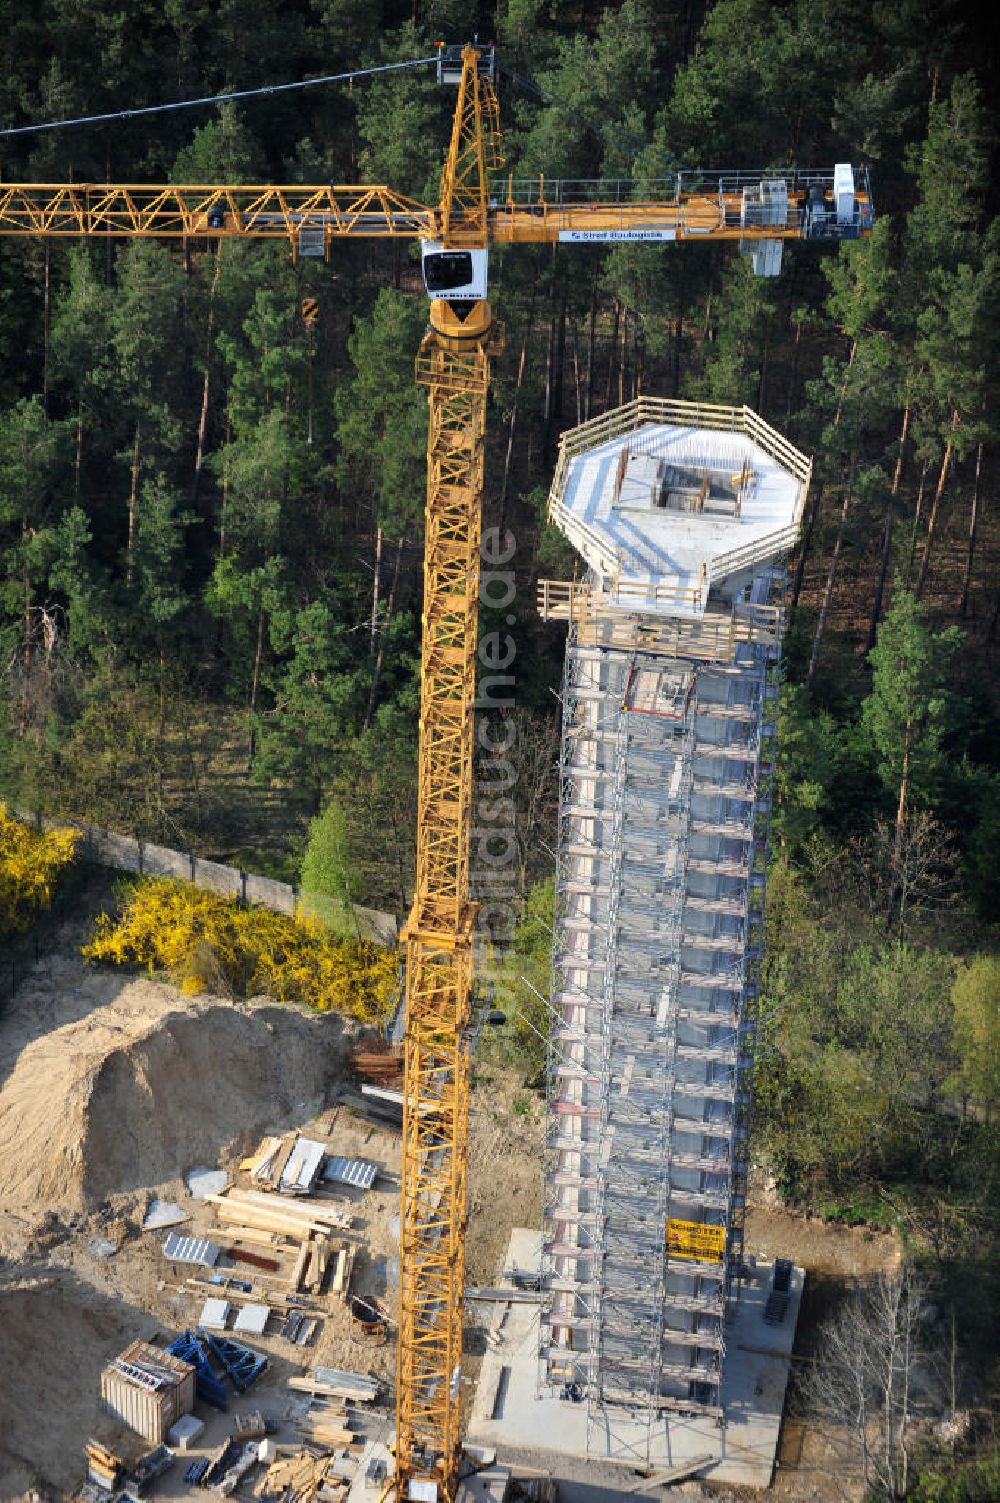 Luftbild PRÖTZEL OT Heidekrug - Baustelle zur Errichtung eines Wetterradarturmes des DWD auf dem Gelände der ehemaligen Kaserne Heidekrug